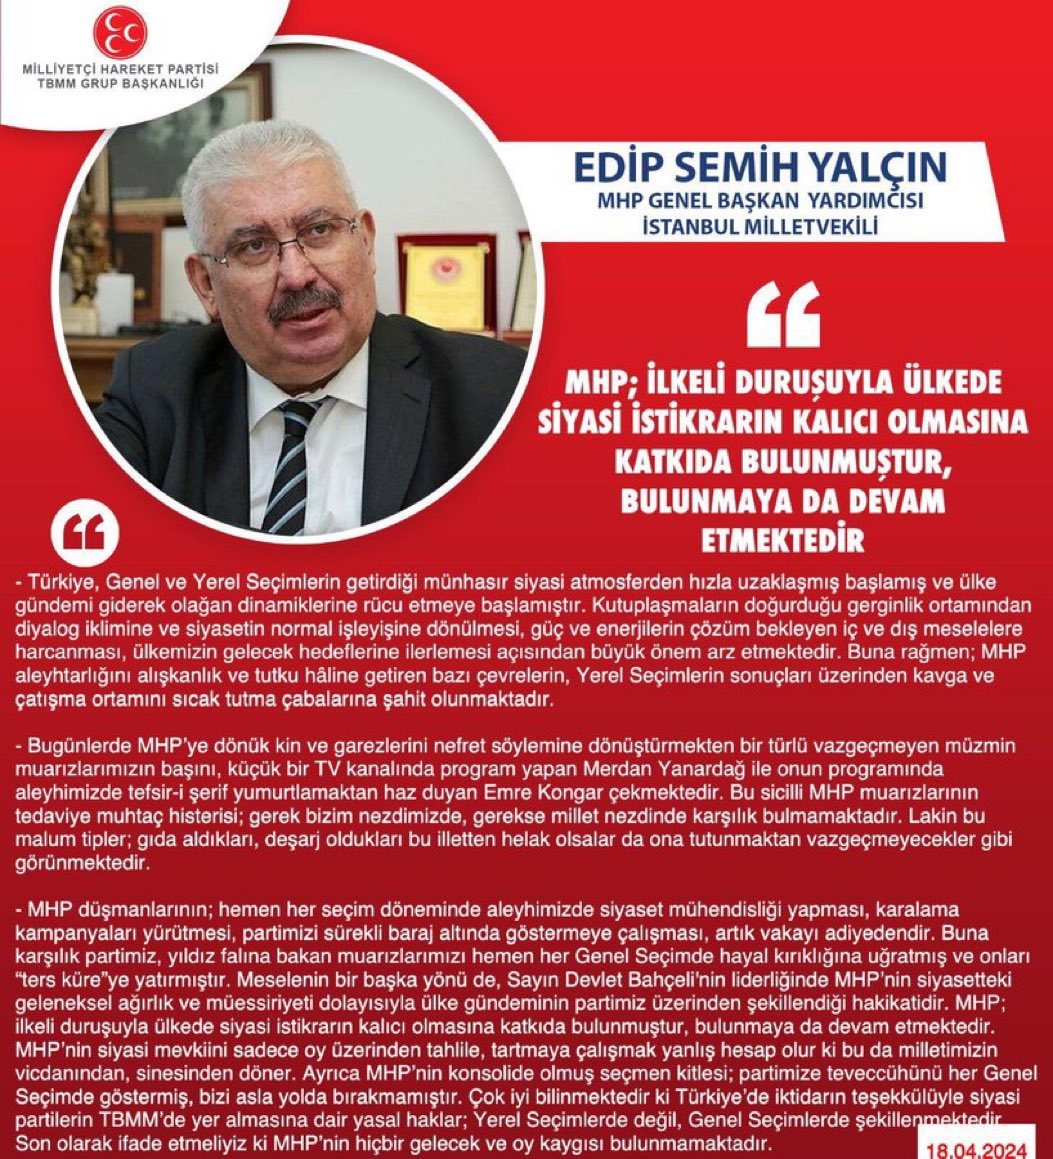 MHP Genel Başkan Yardımcısı ve İstanbul Milletvekilimiz Prof. Dr. E. Semih Yalçın @E_SemihYalcin: MHP; ilkeli duruşuyla ülkede siyasi istikrarın kalıcı olmasına katkıda bulunmuştur, bulunmaya da devam etmektedir mhphaber.com/?p=10368